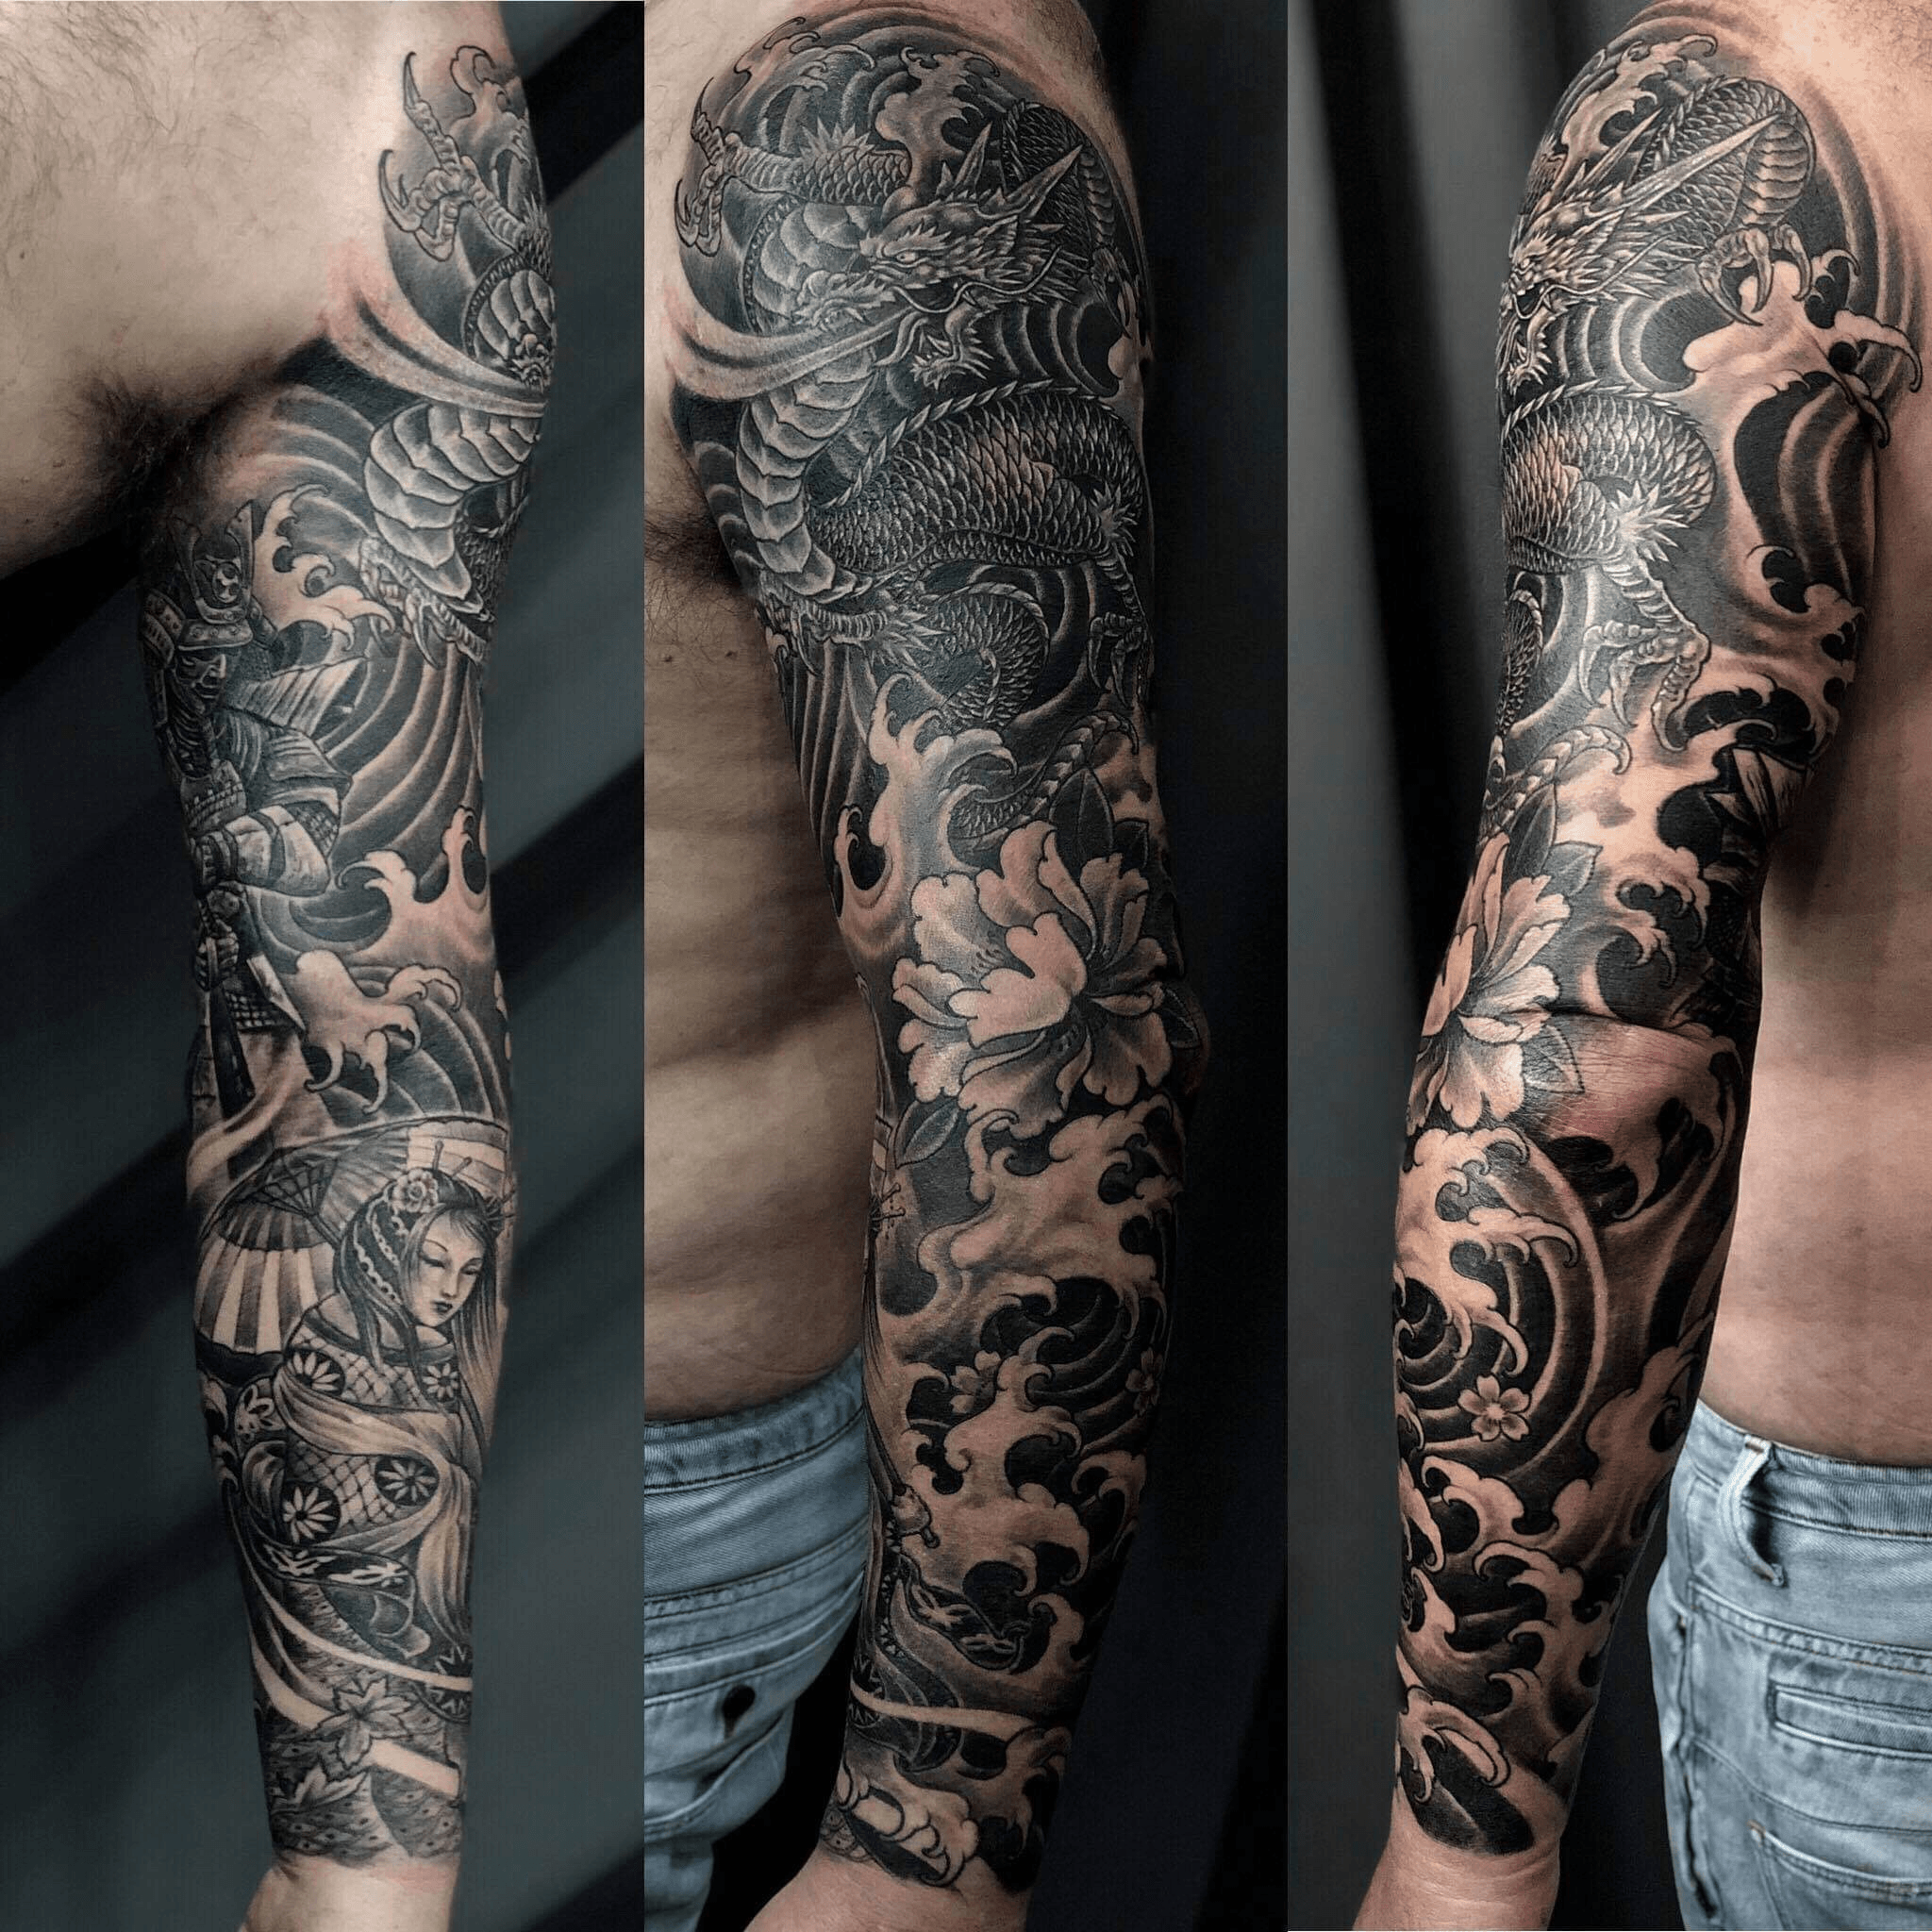 Full Sleeve Tattoos Picture List Of Full Sleeve Tattoo Designs